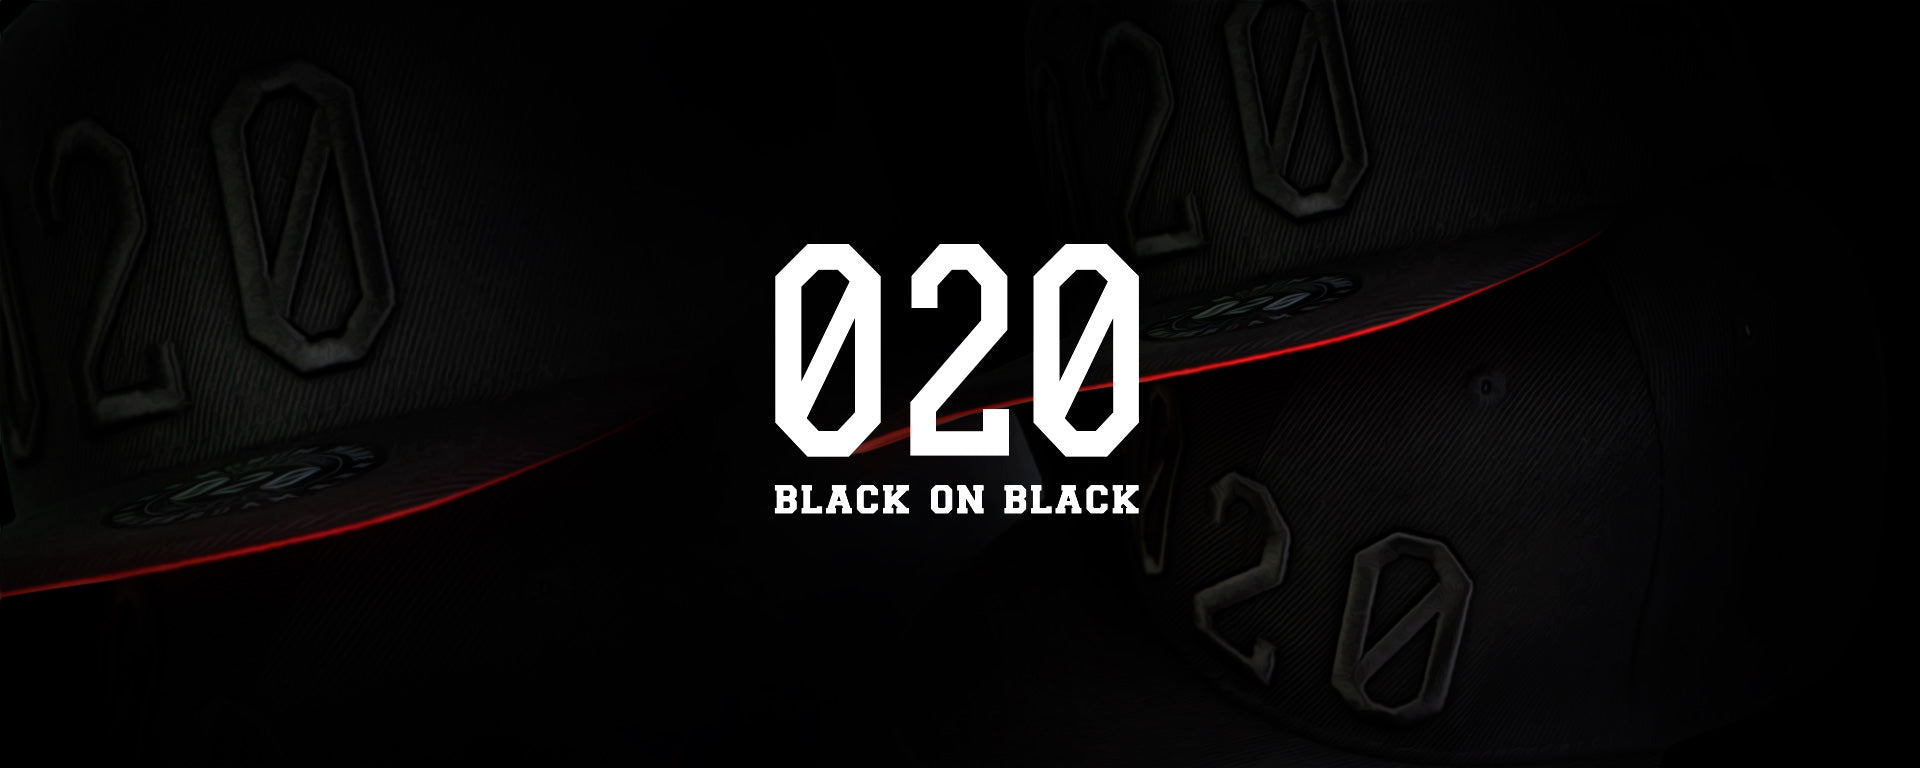 Mokum Made 020 black on black